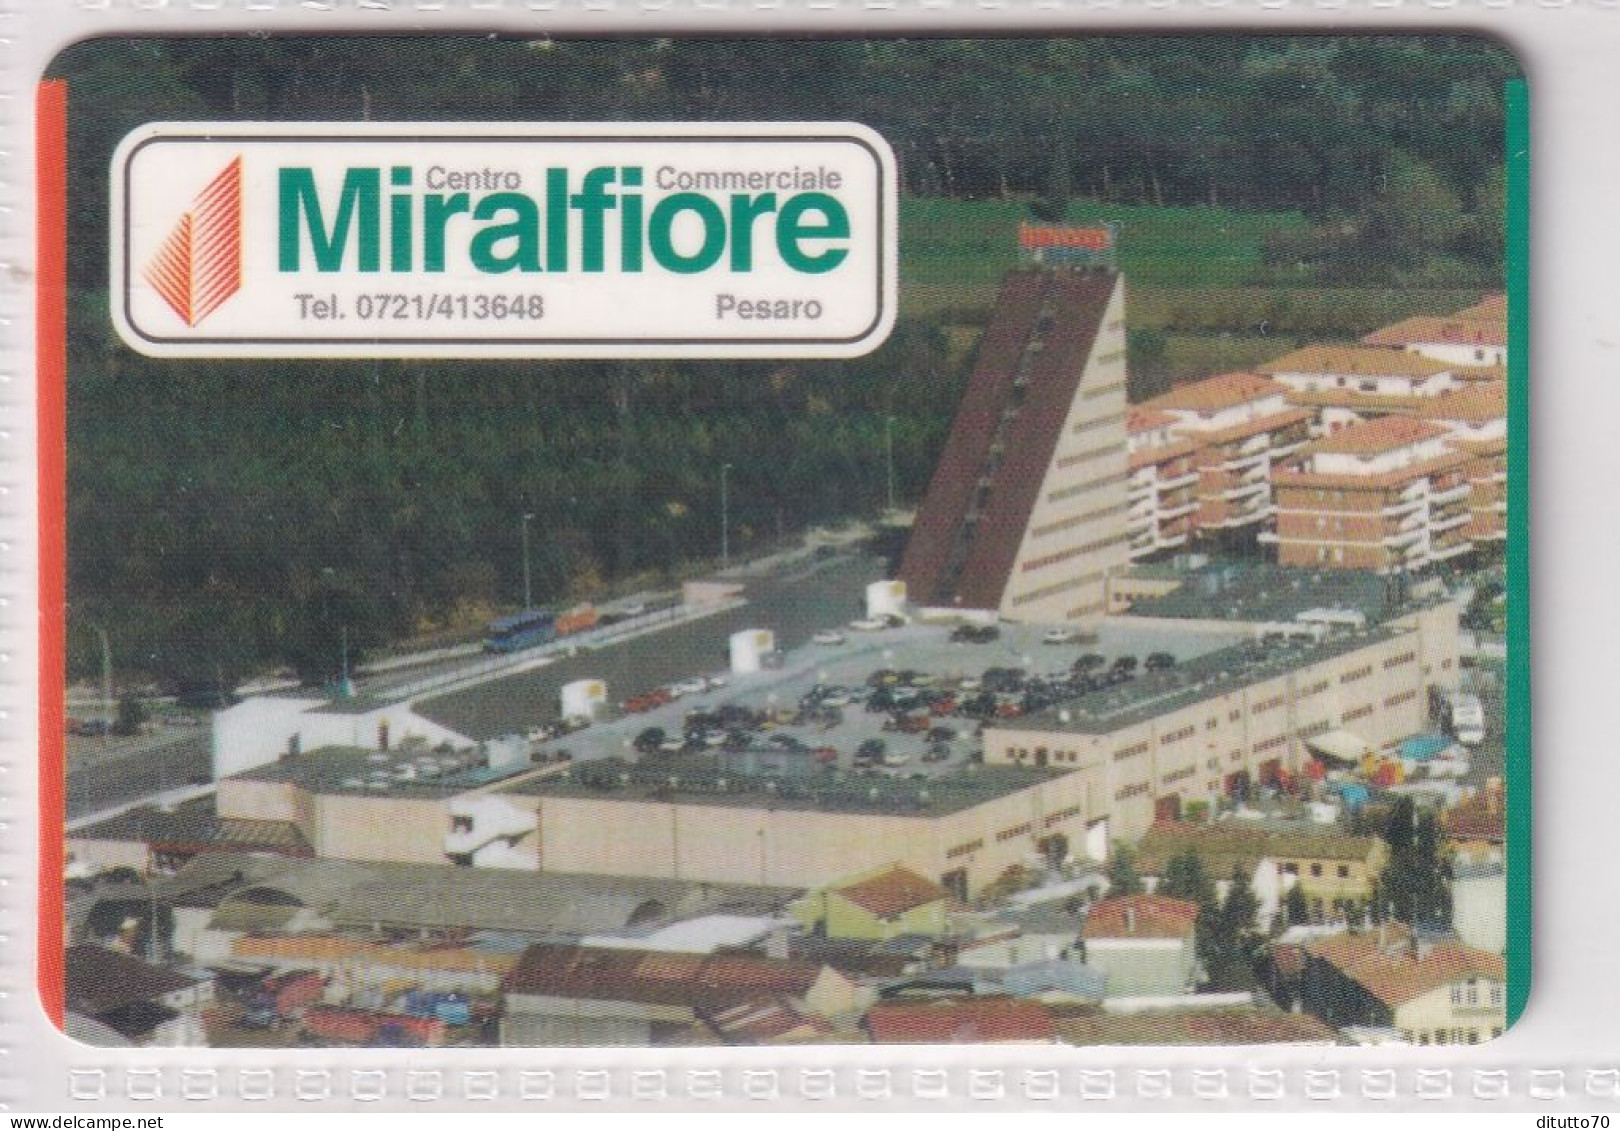 Calendarietto - Miralfiore - Pesaro - Anno 1997 - Small : 1991-00